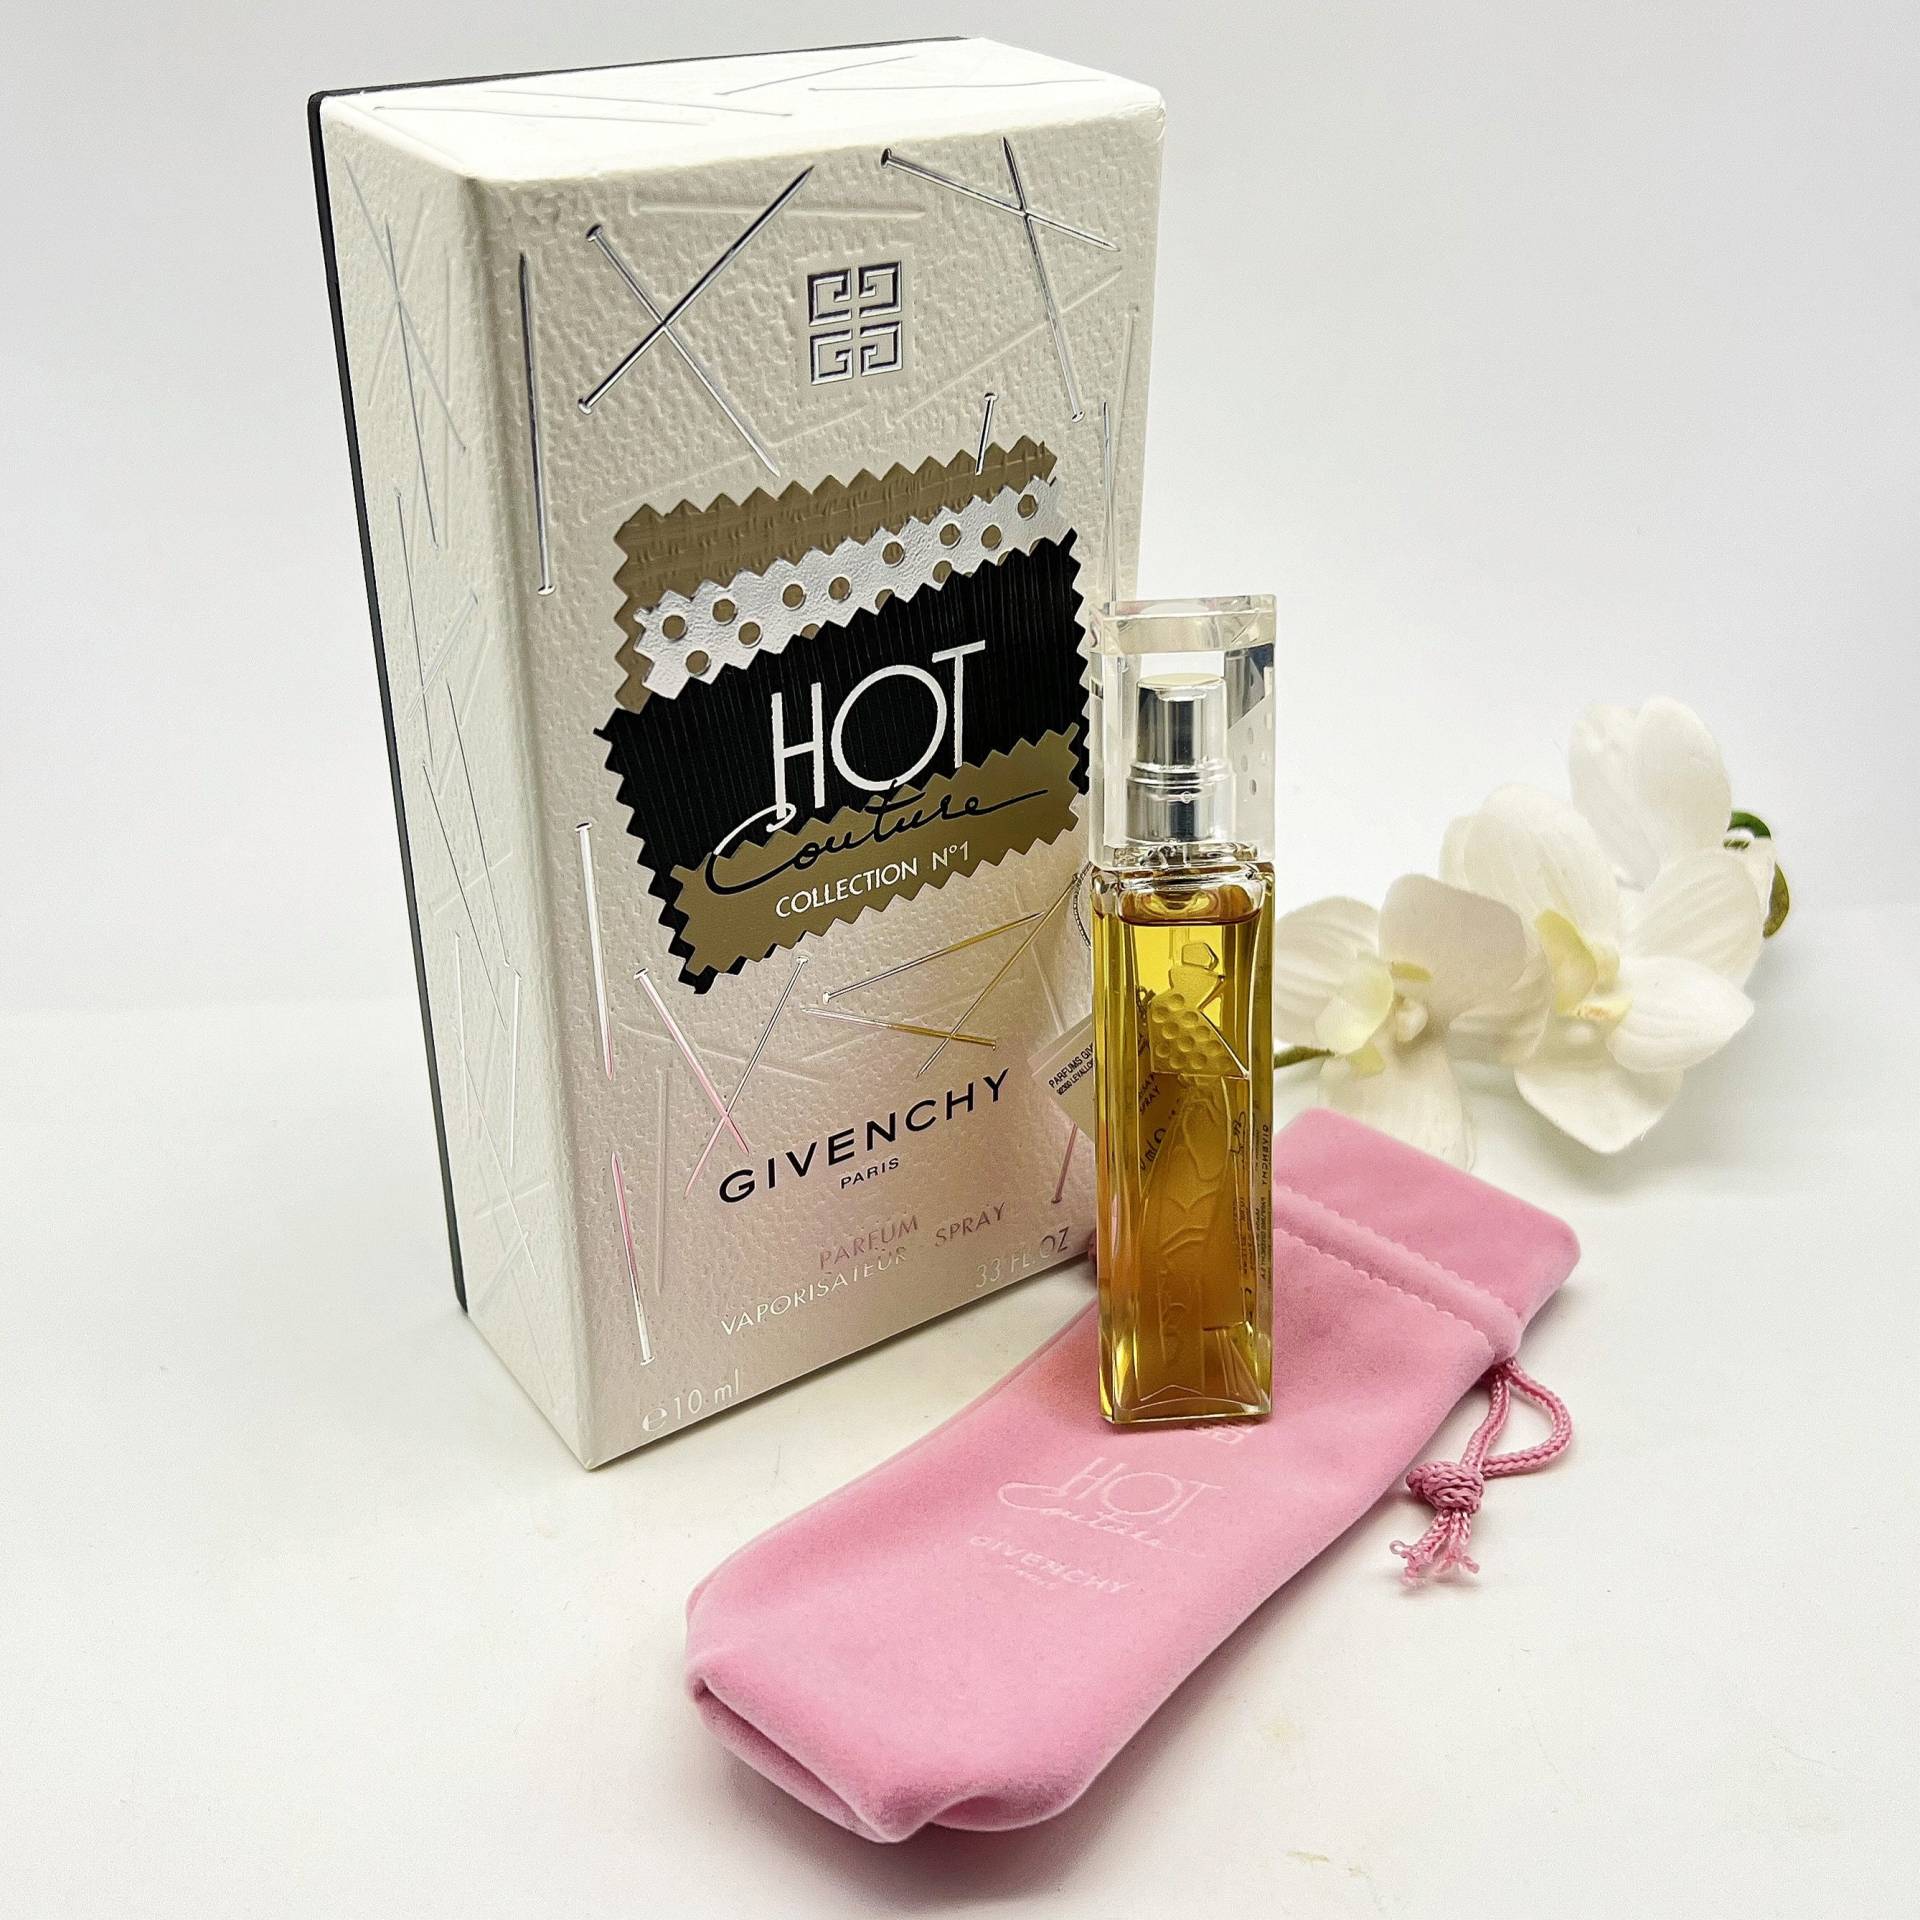 Hot Couture Kollektion No 1 Gegebenen Chy Parfum/Extrait 10Ml Spray Vintage | 2000 Selten Parfüm Für Frauen von VintageItalienstyle